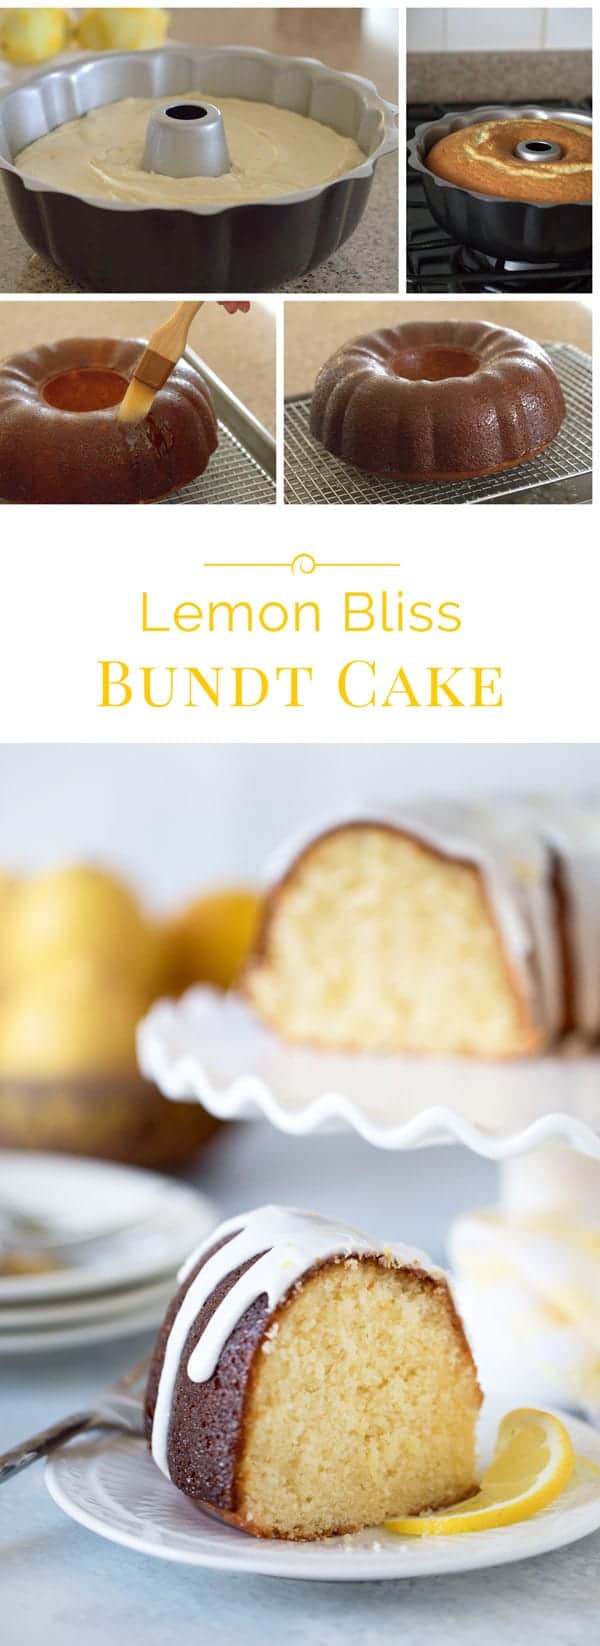 Lemon-Bliss-Cake-collage